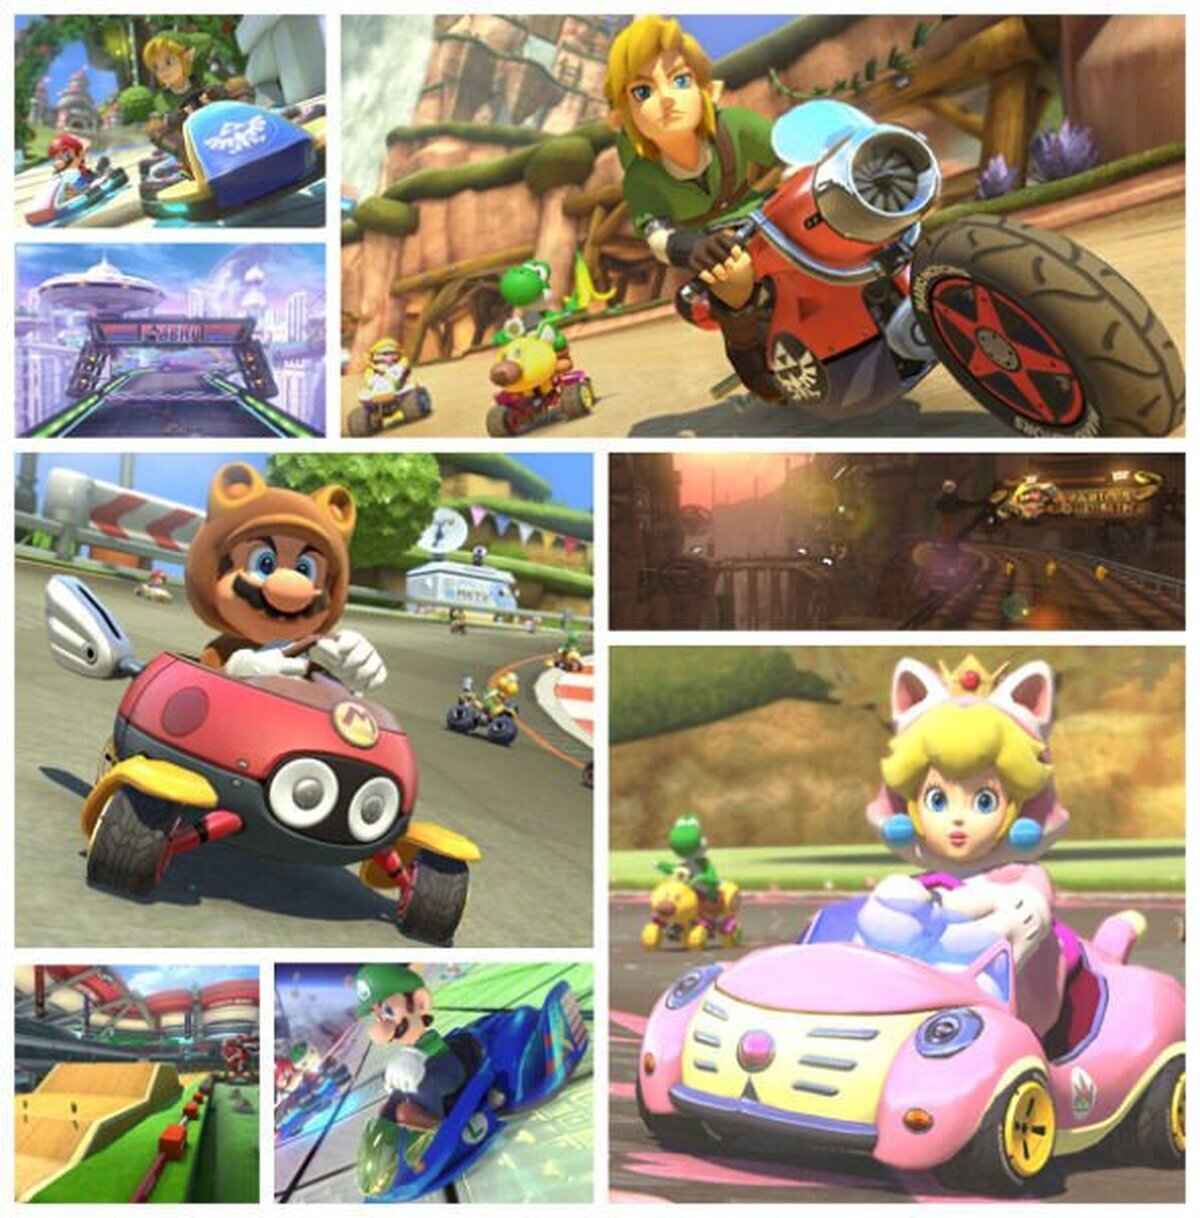 Mario Kart 8: Desvelados los nuevos DLC's con personajes y circuitos nuevos